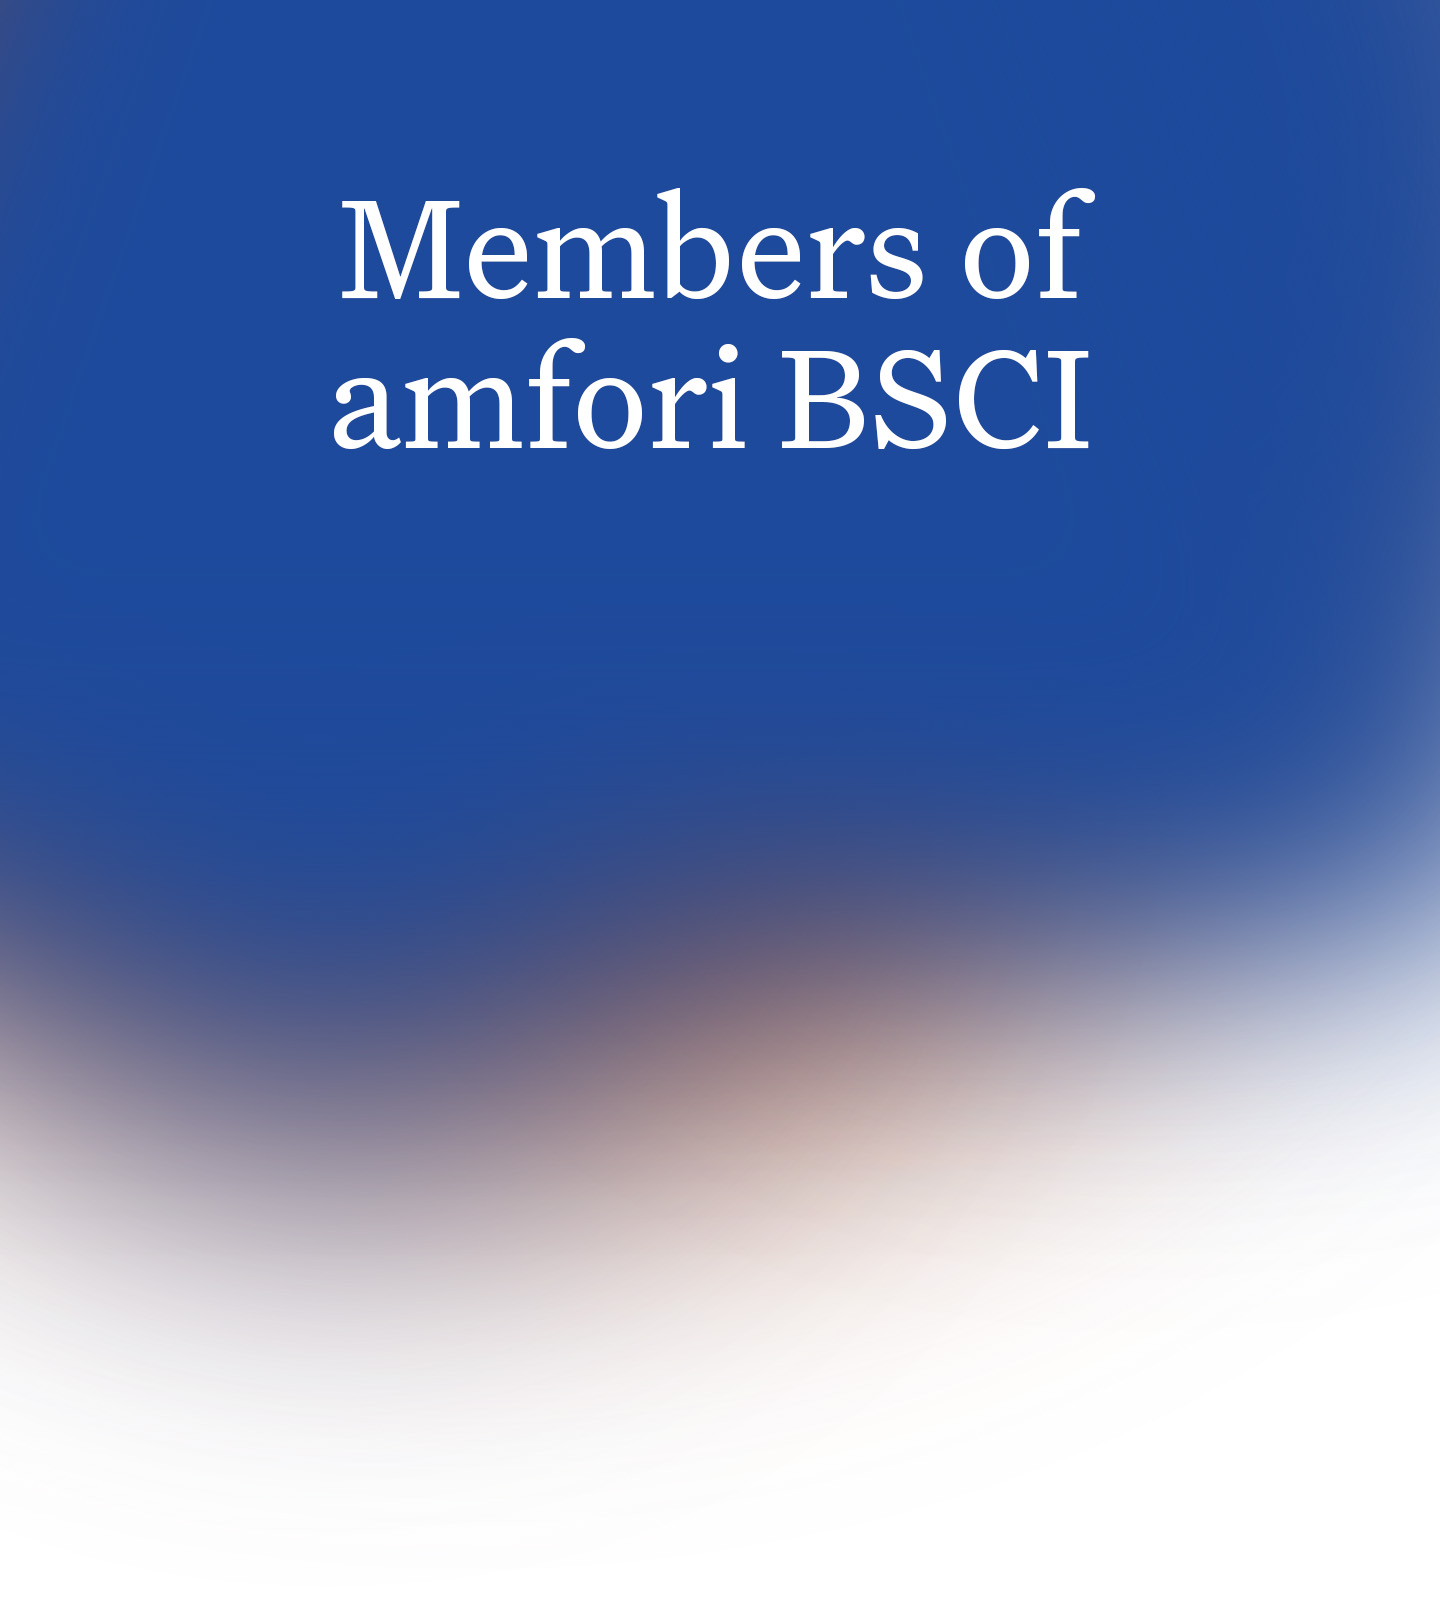 Members of BSCI